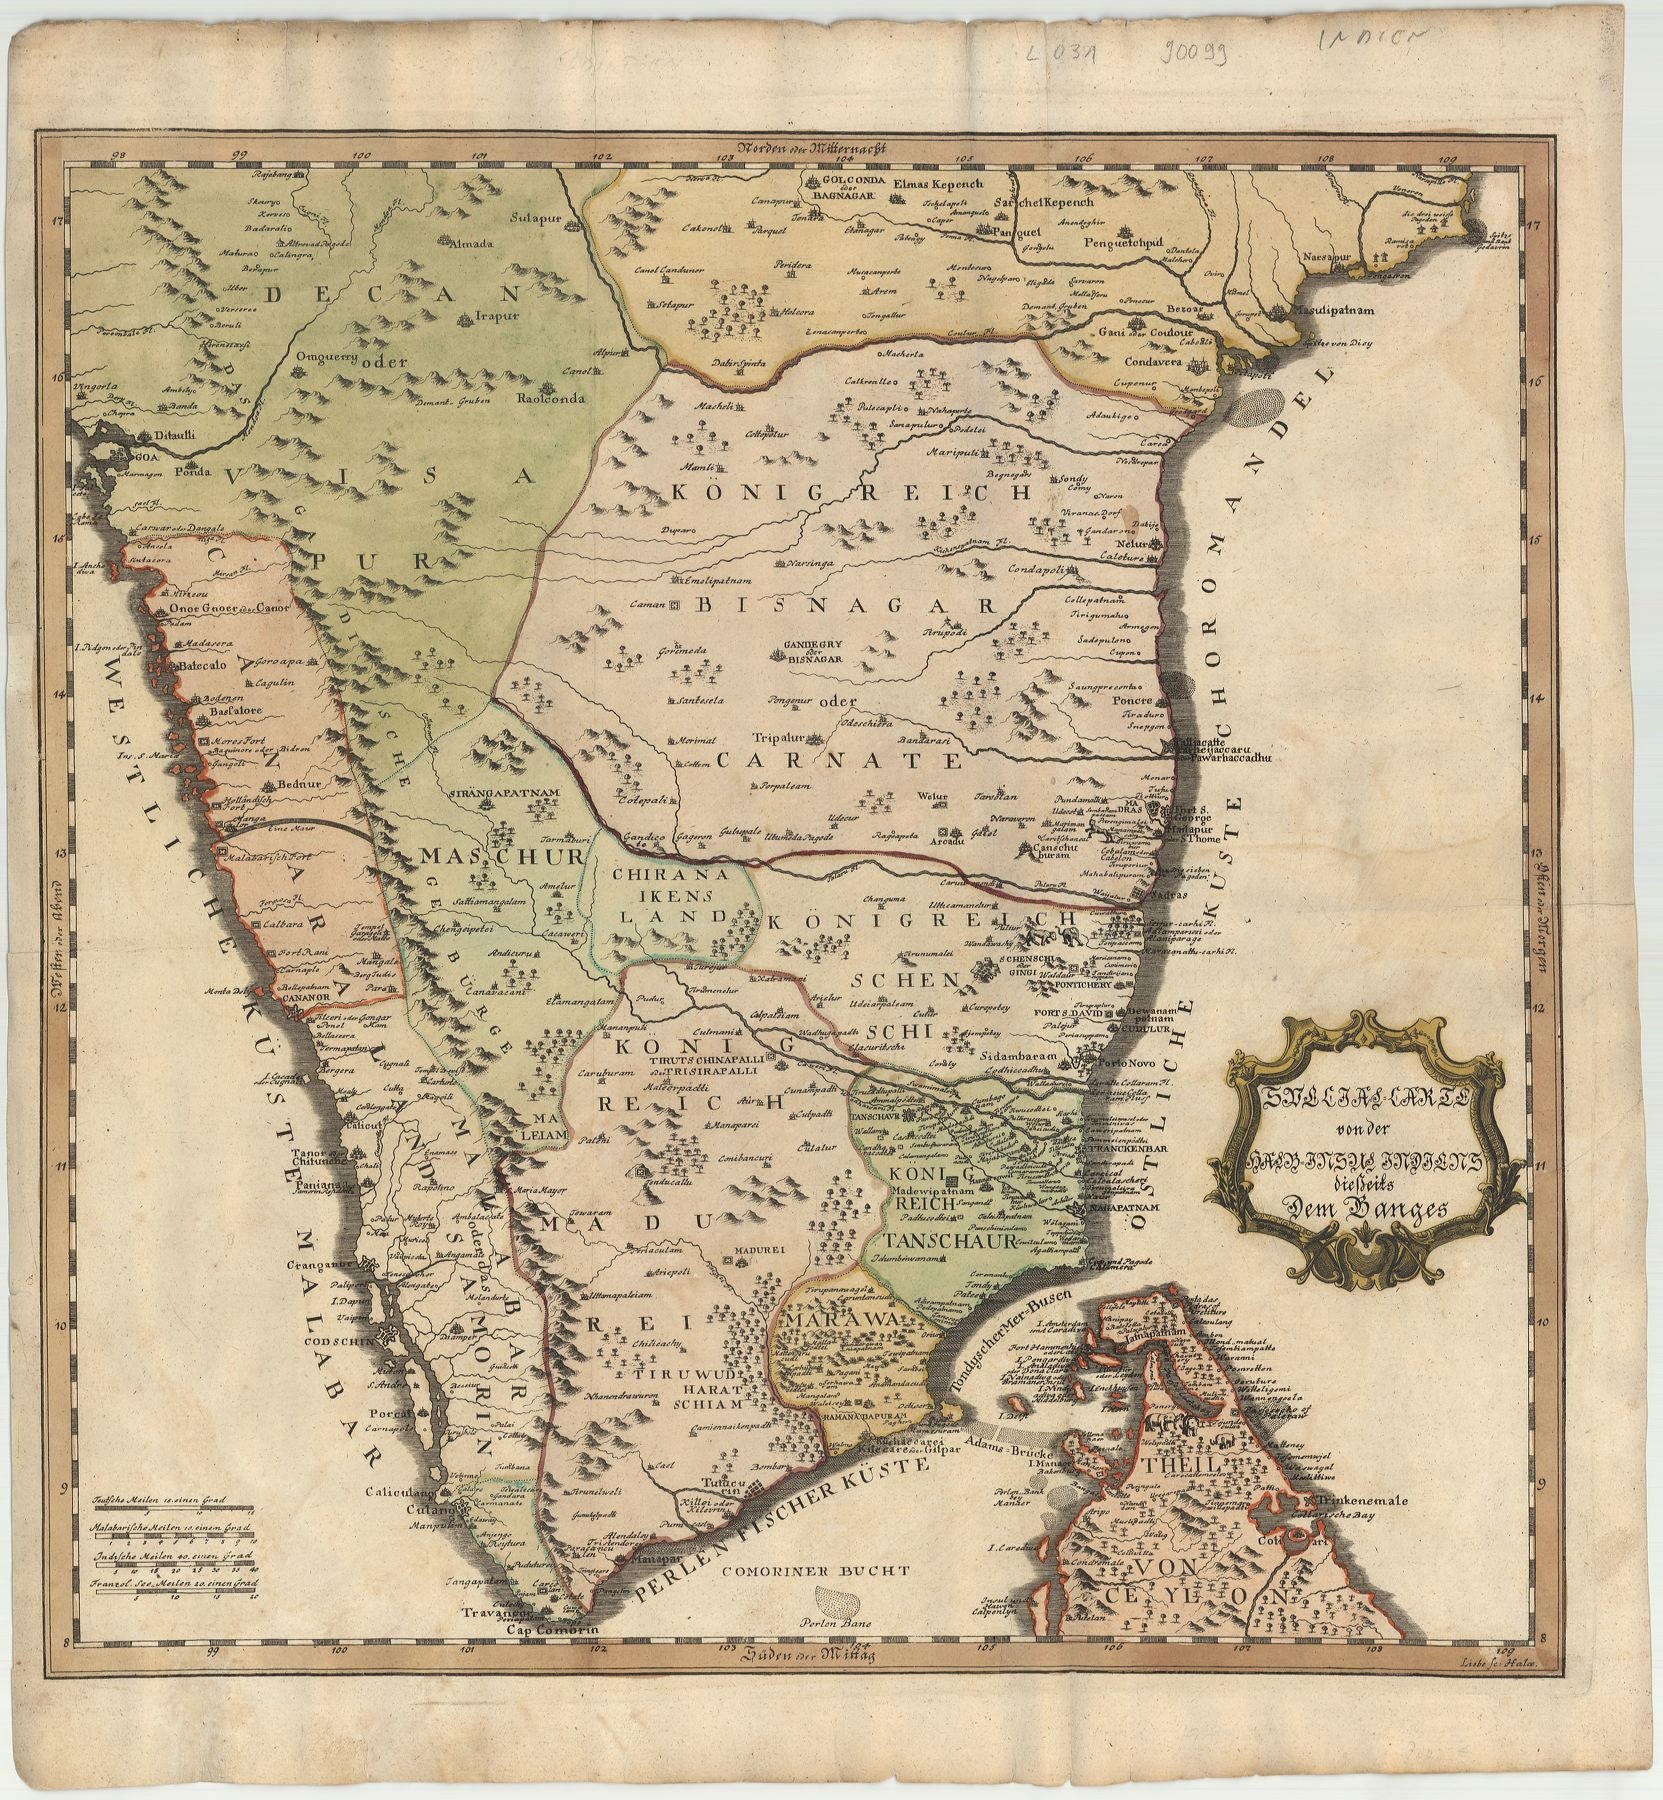 Südindien in der Zeit um 1740 von Christian Gottlob Liebe